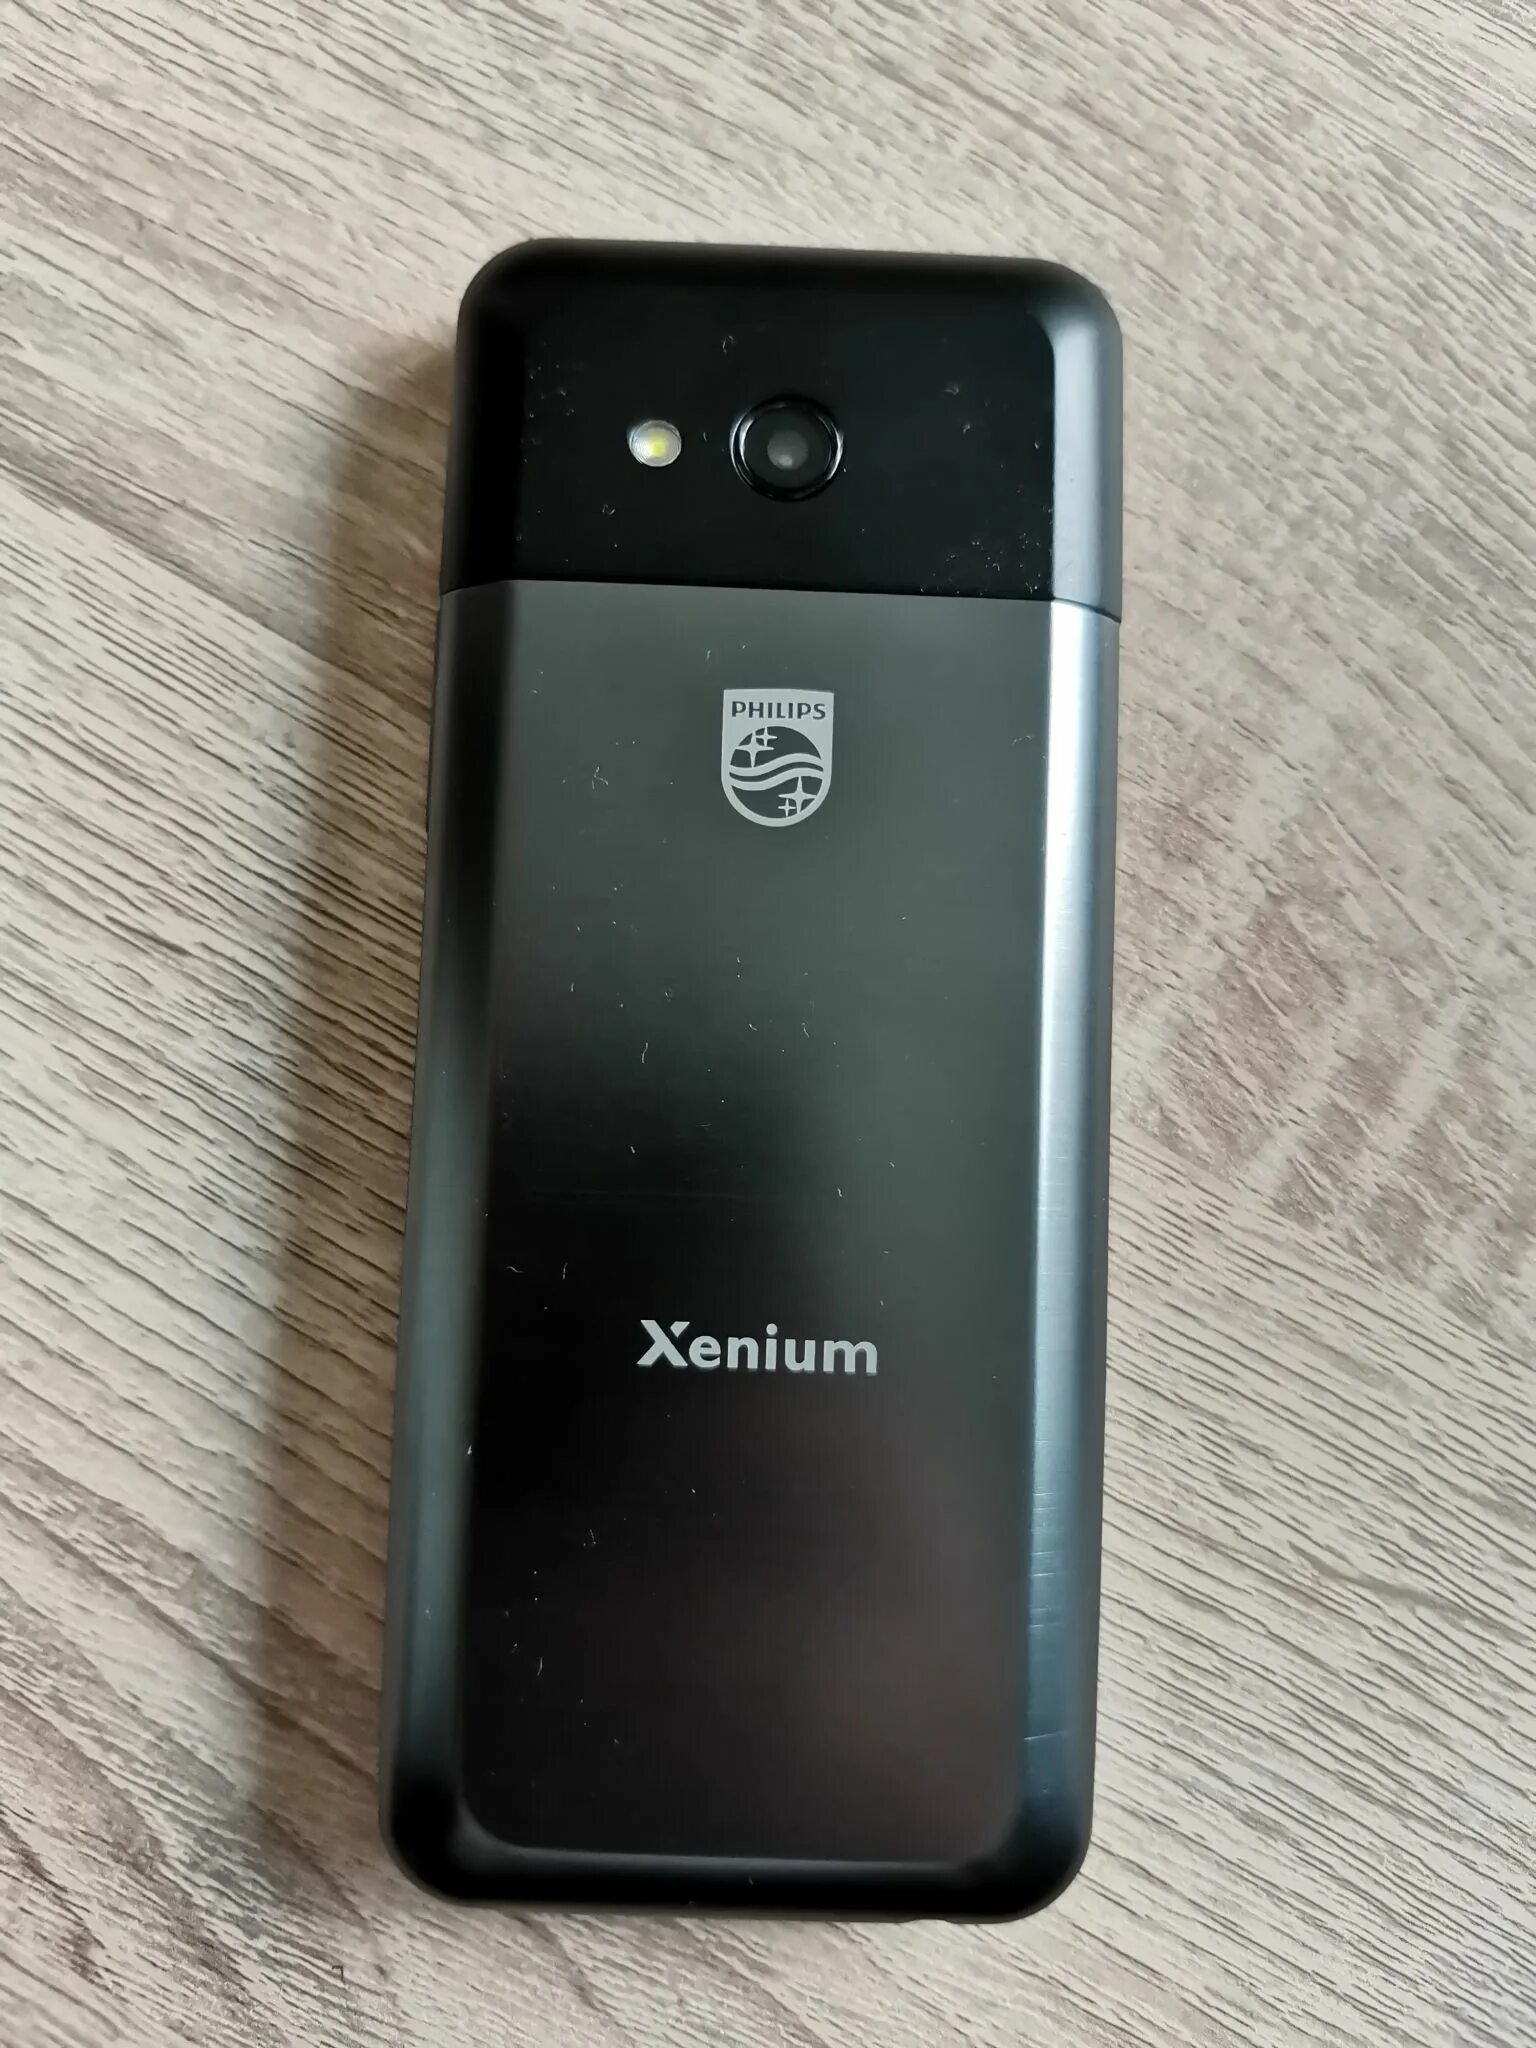 Филипс 590 телефон. Philips Xenium e590. Мобильный телефон Philips Xenium e590 Black. Philips Xenium e590 Black (черный). Мобильный телефон Philips Xenium e590 Black размер.